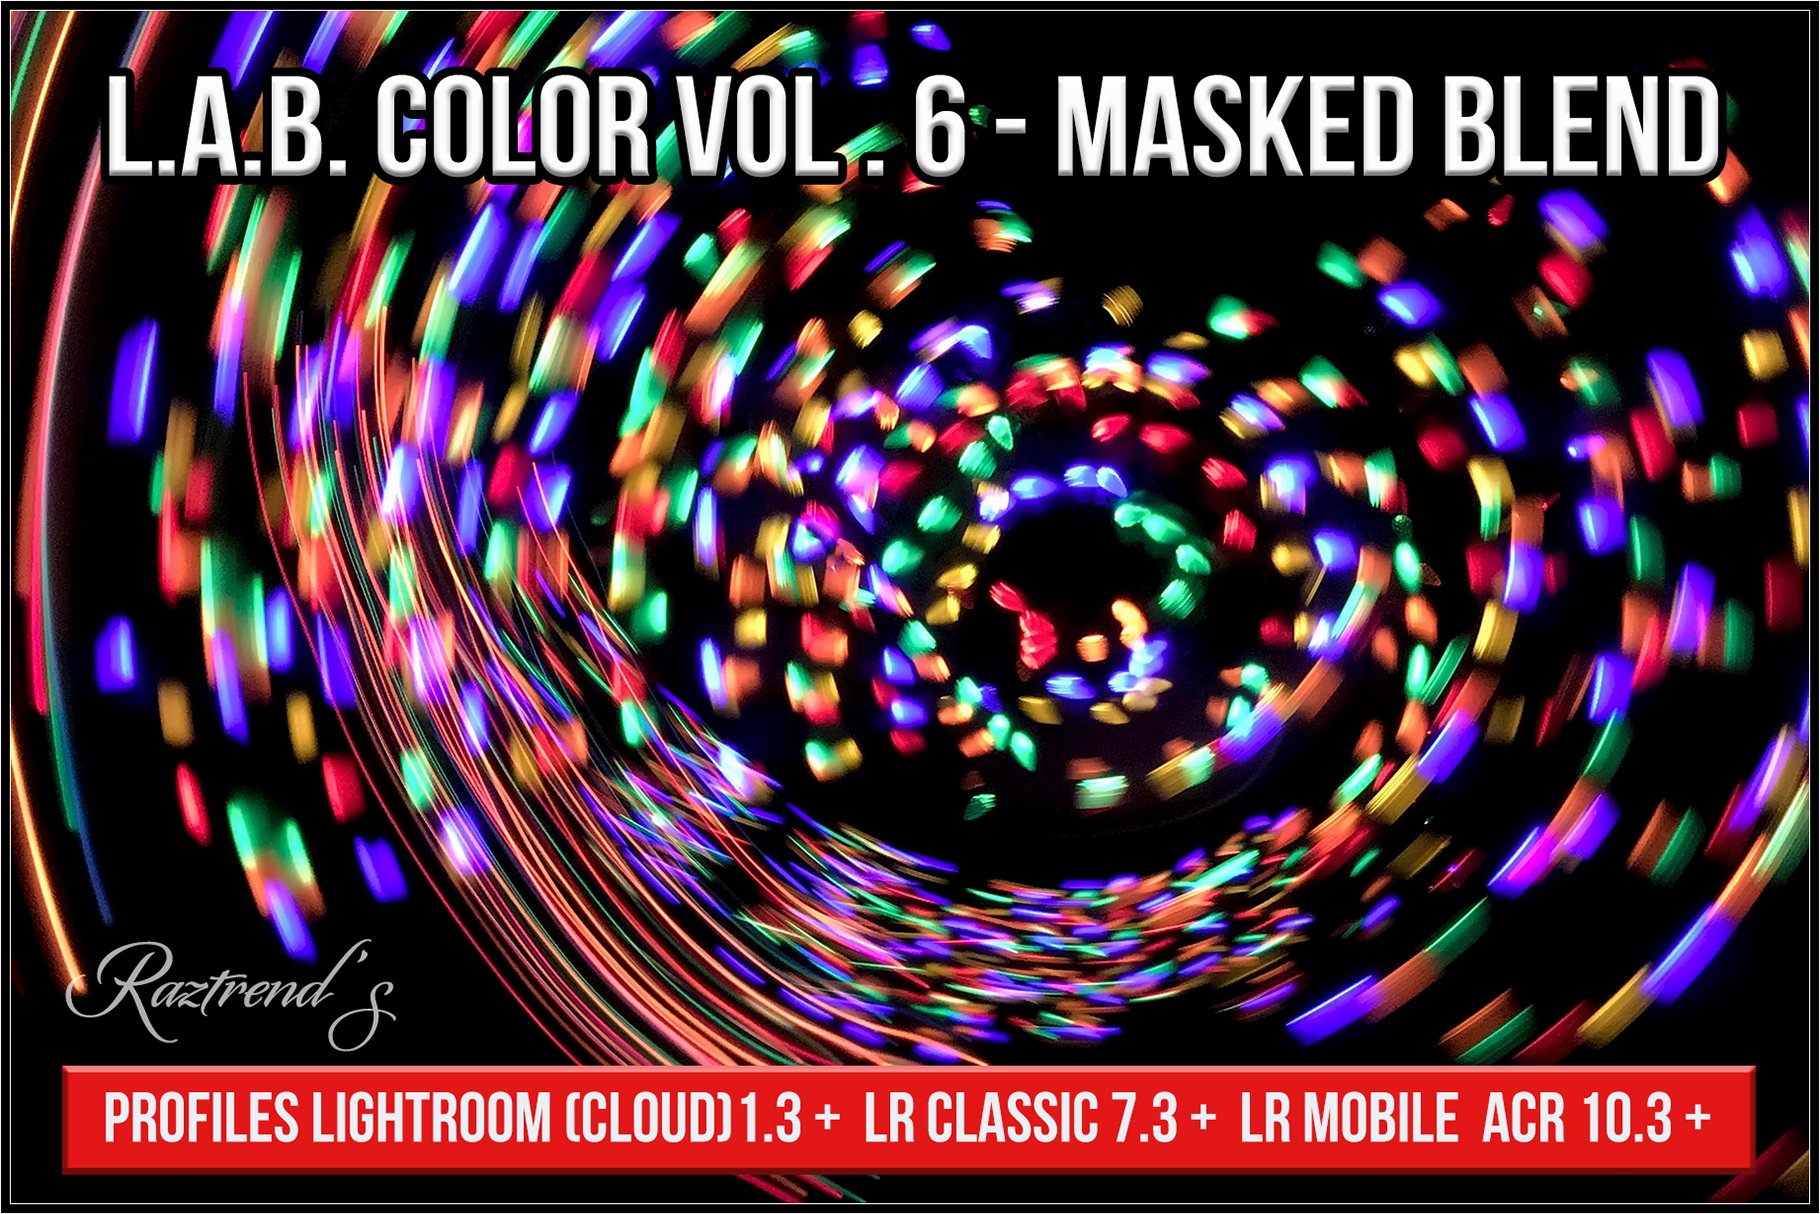 LAB Color V6 - Masked Blend profilescover image.